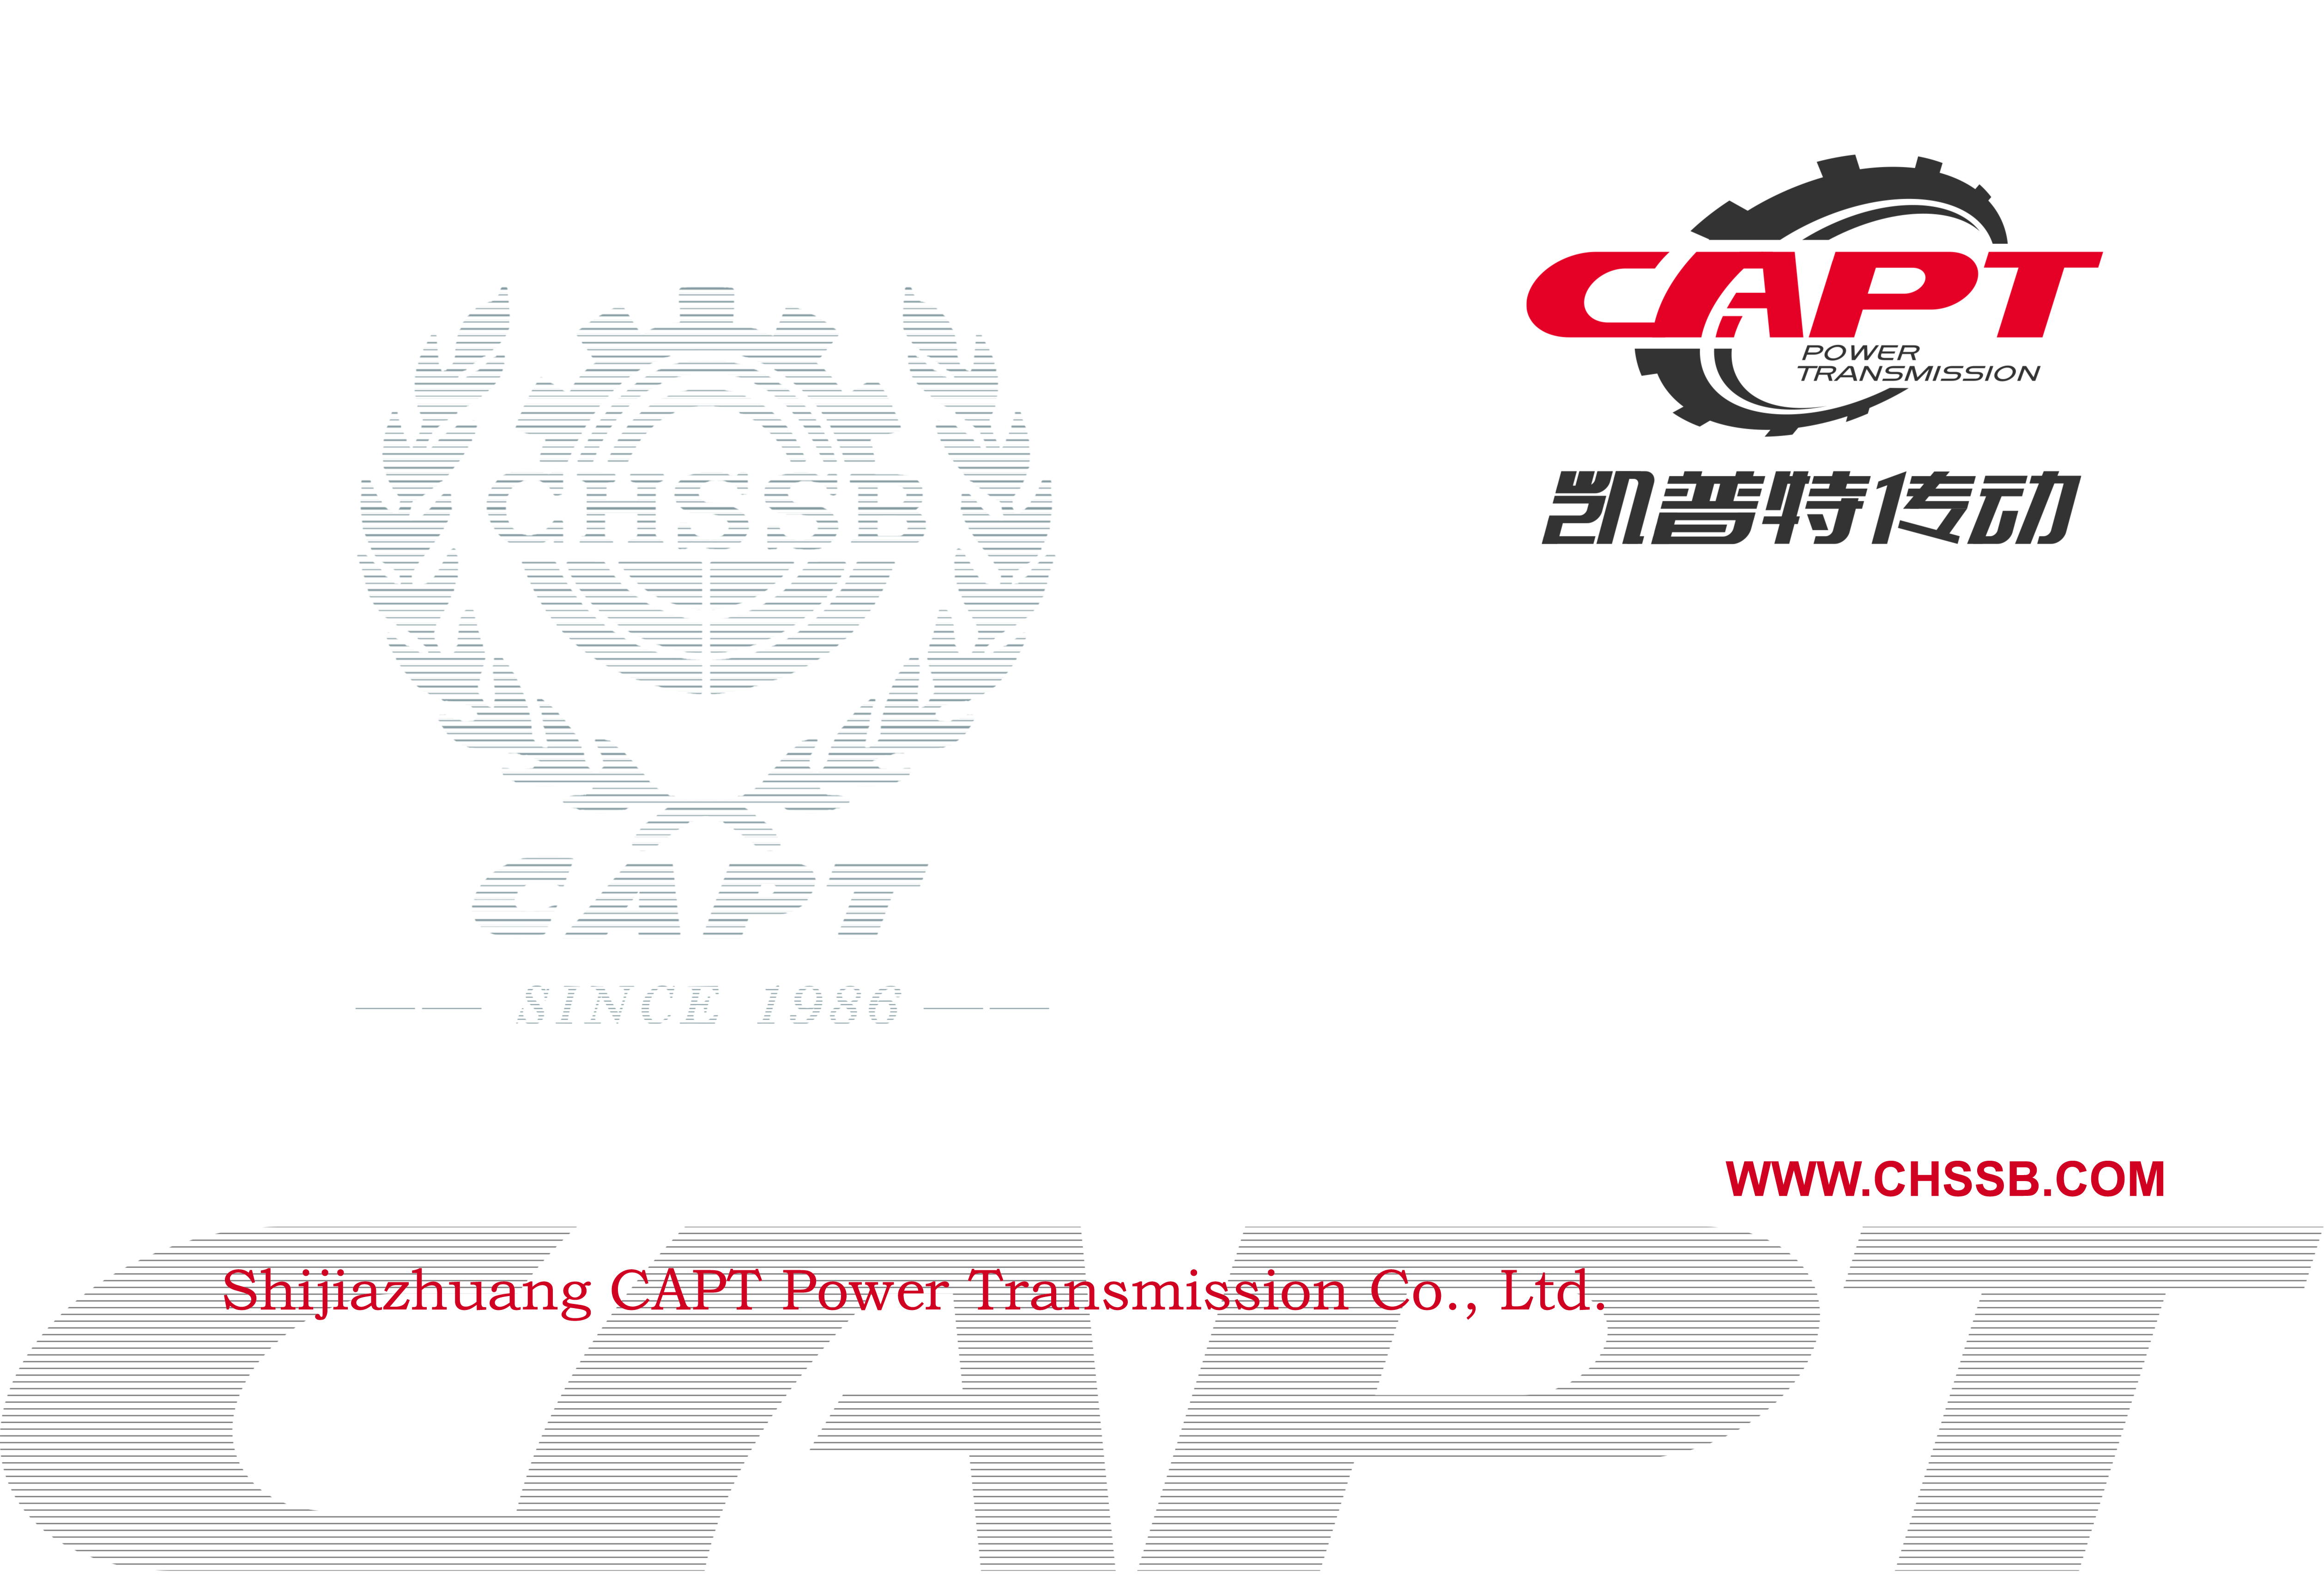 CAPT Company brochure